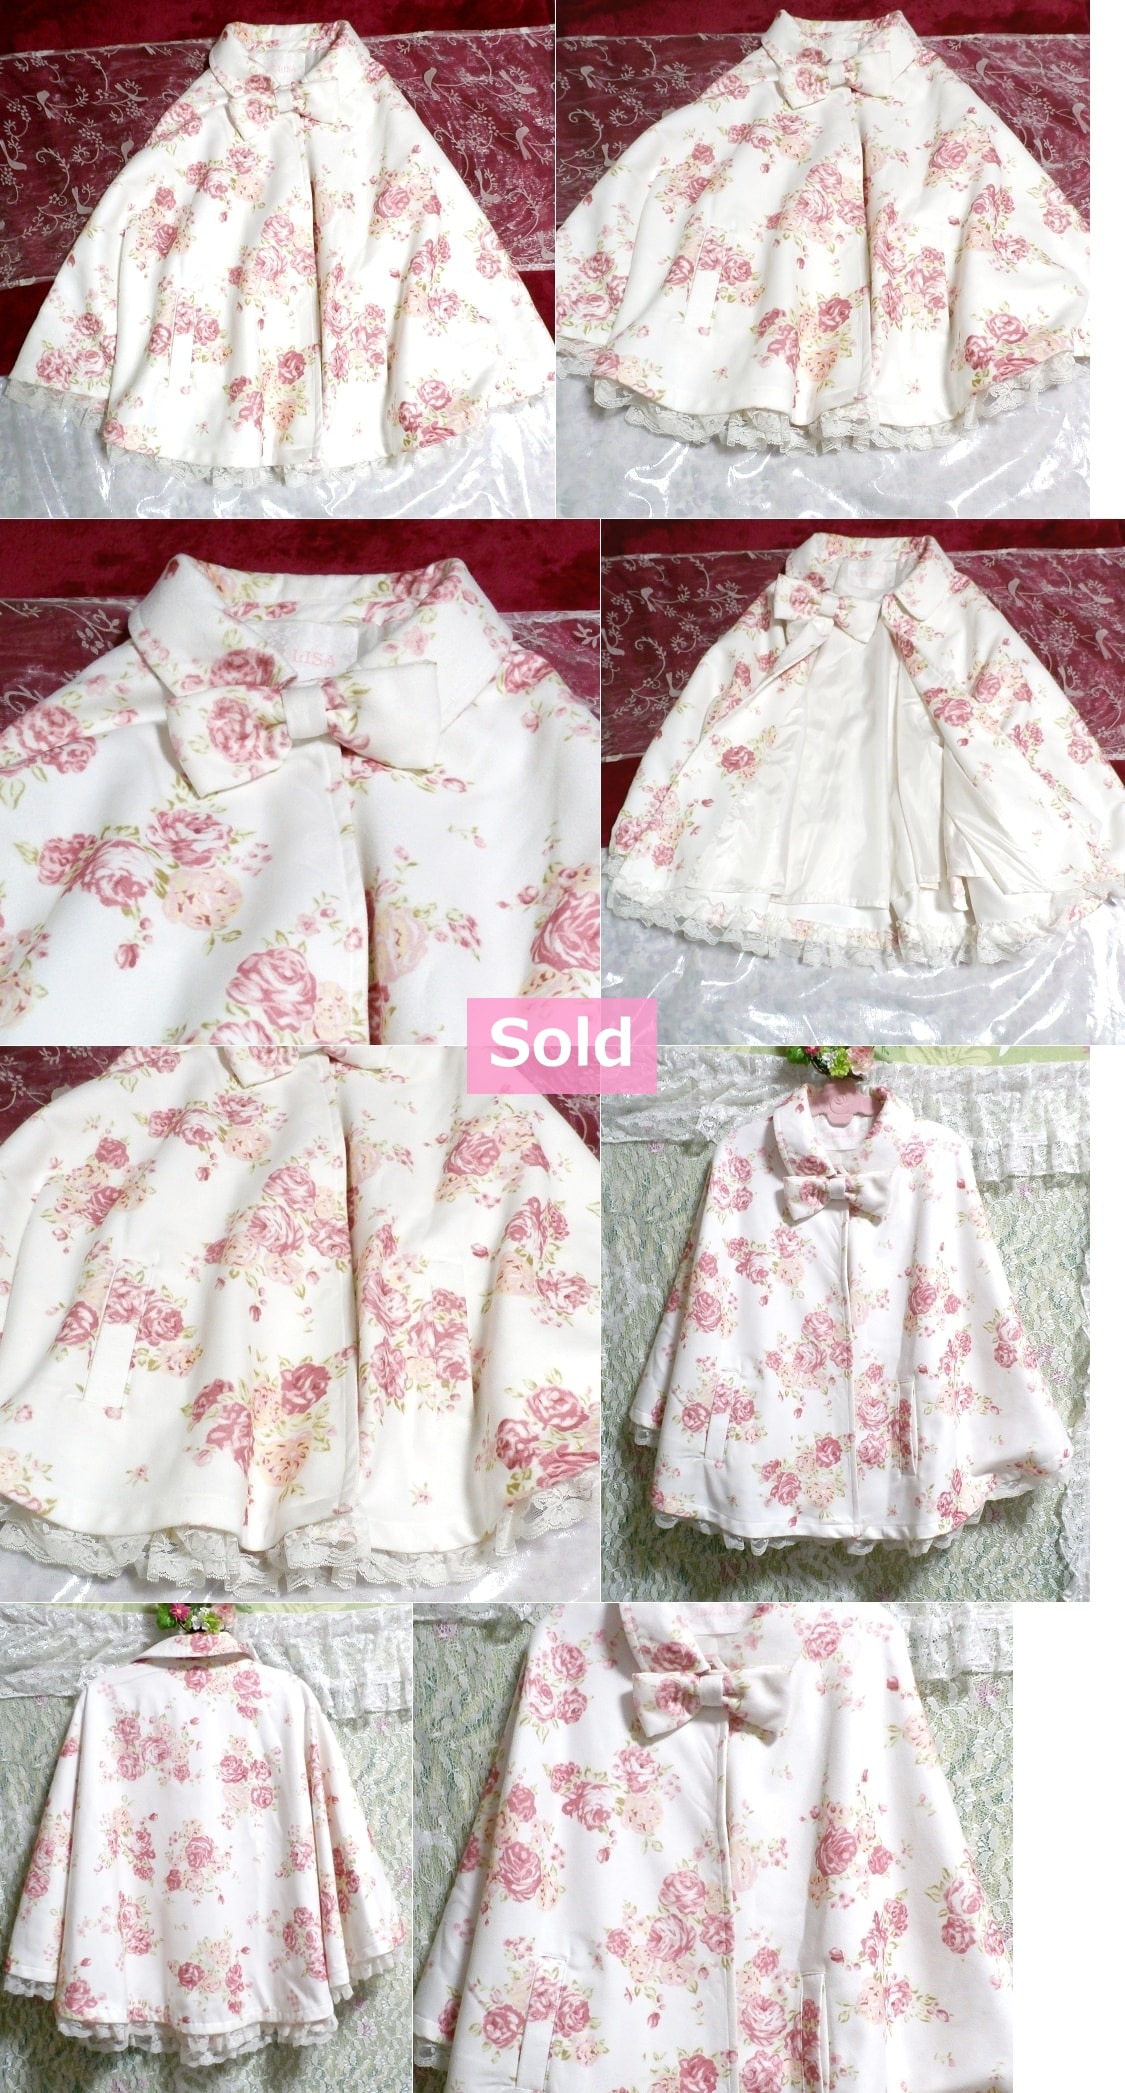 LIZ LISA White floral pattern ribbon poncho coat / tops